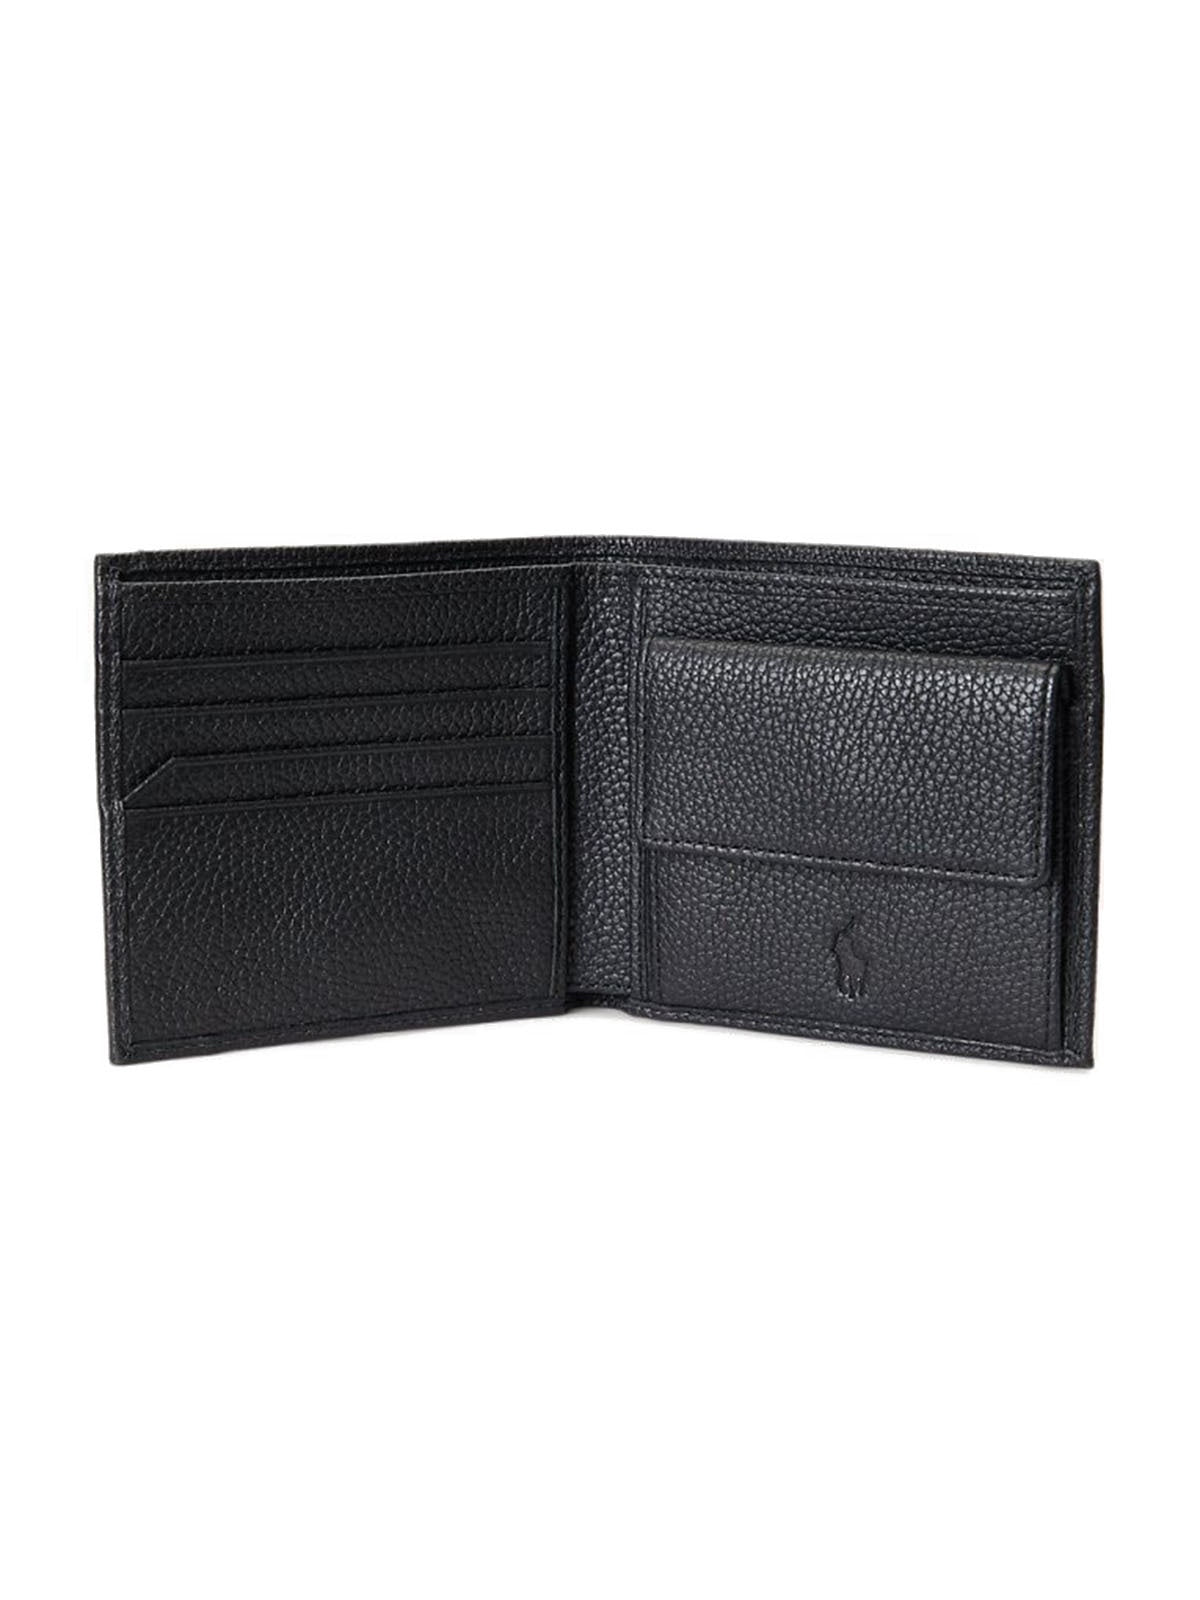 Portafogli Unisex Ralph Lauren - Blfld With Coin Pocket Wallet - Medium - Nero